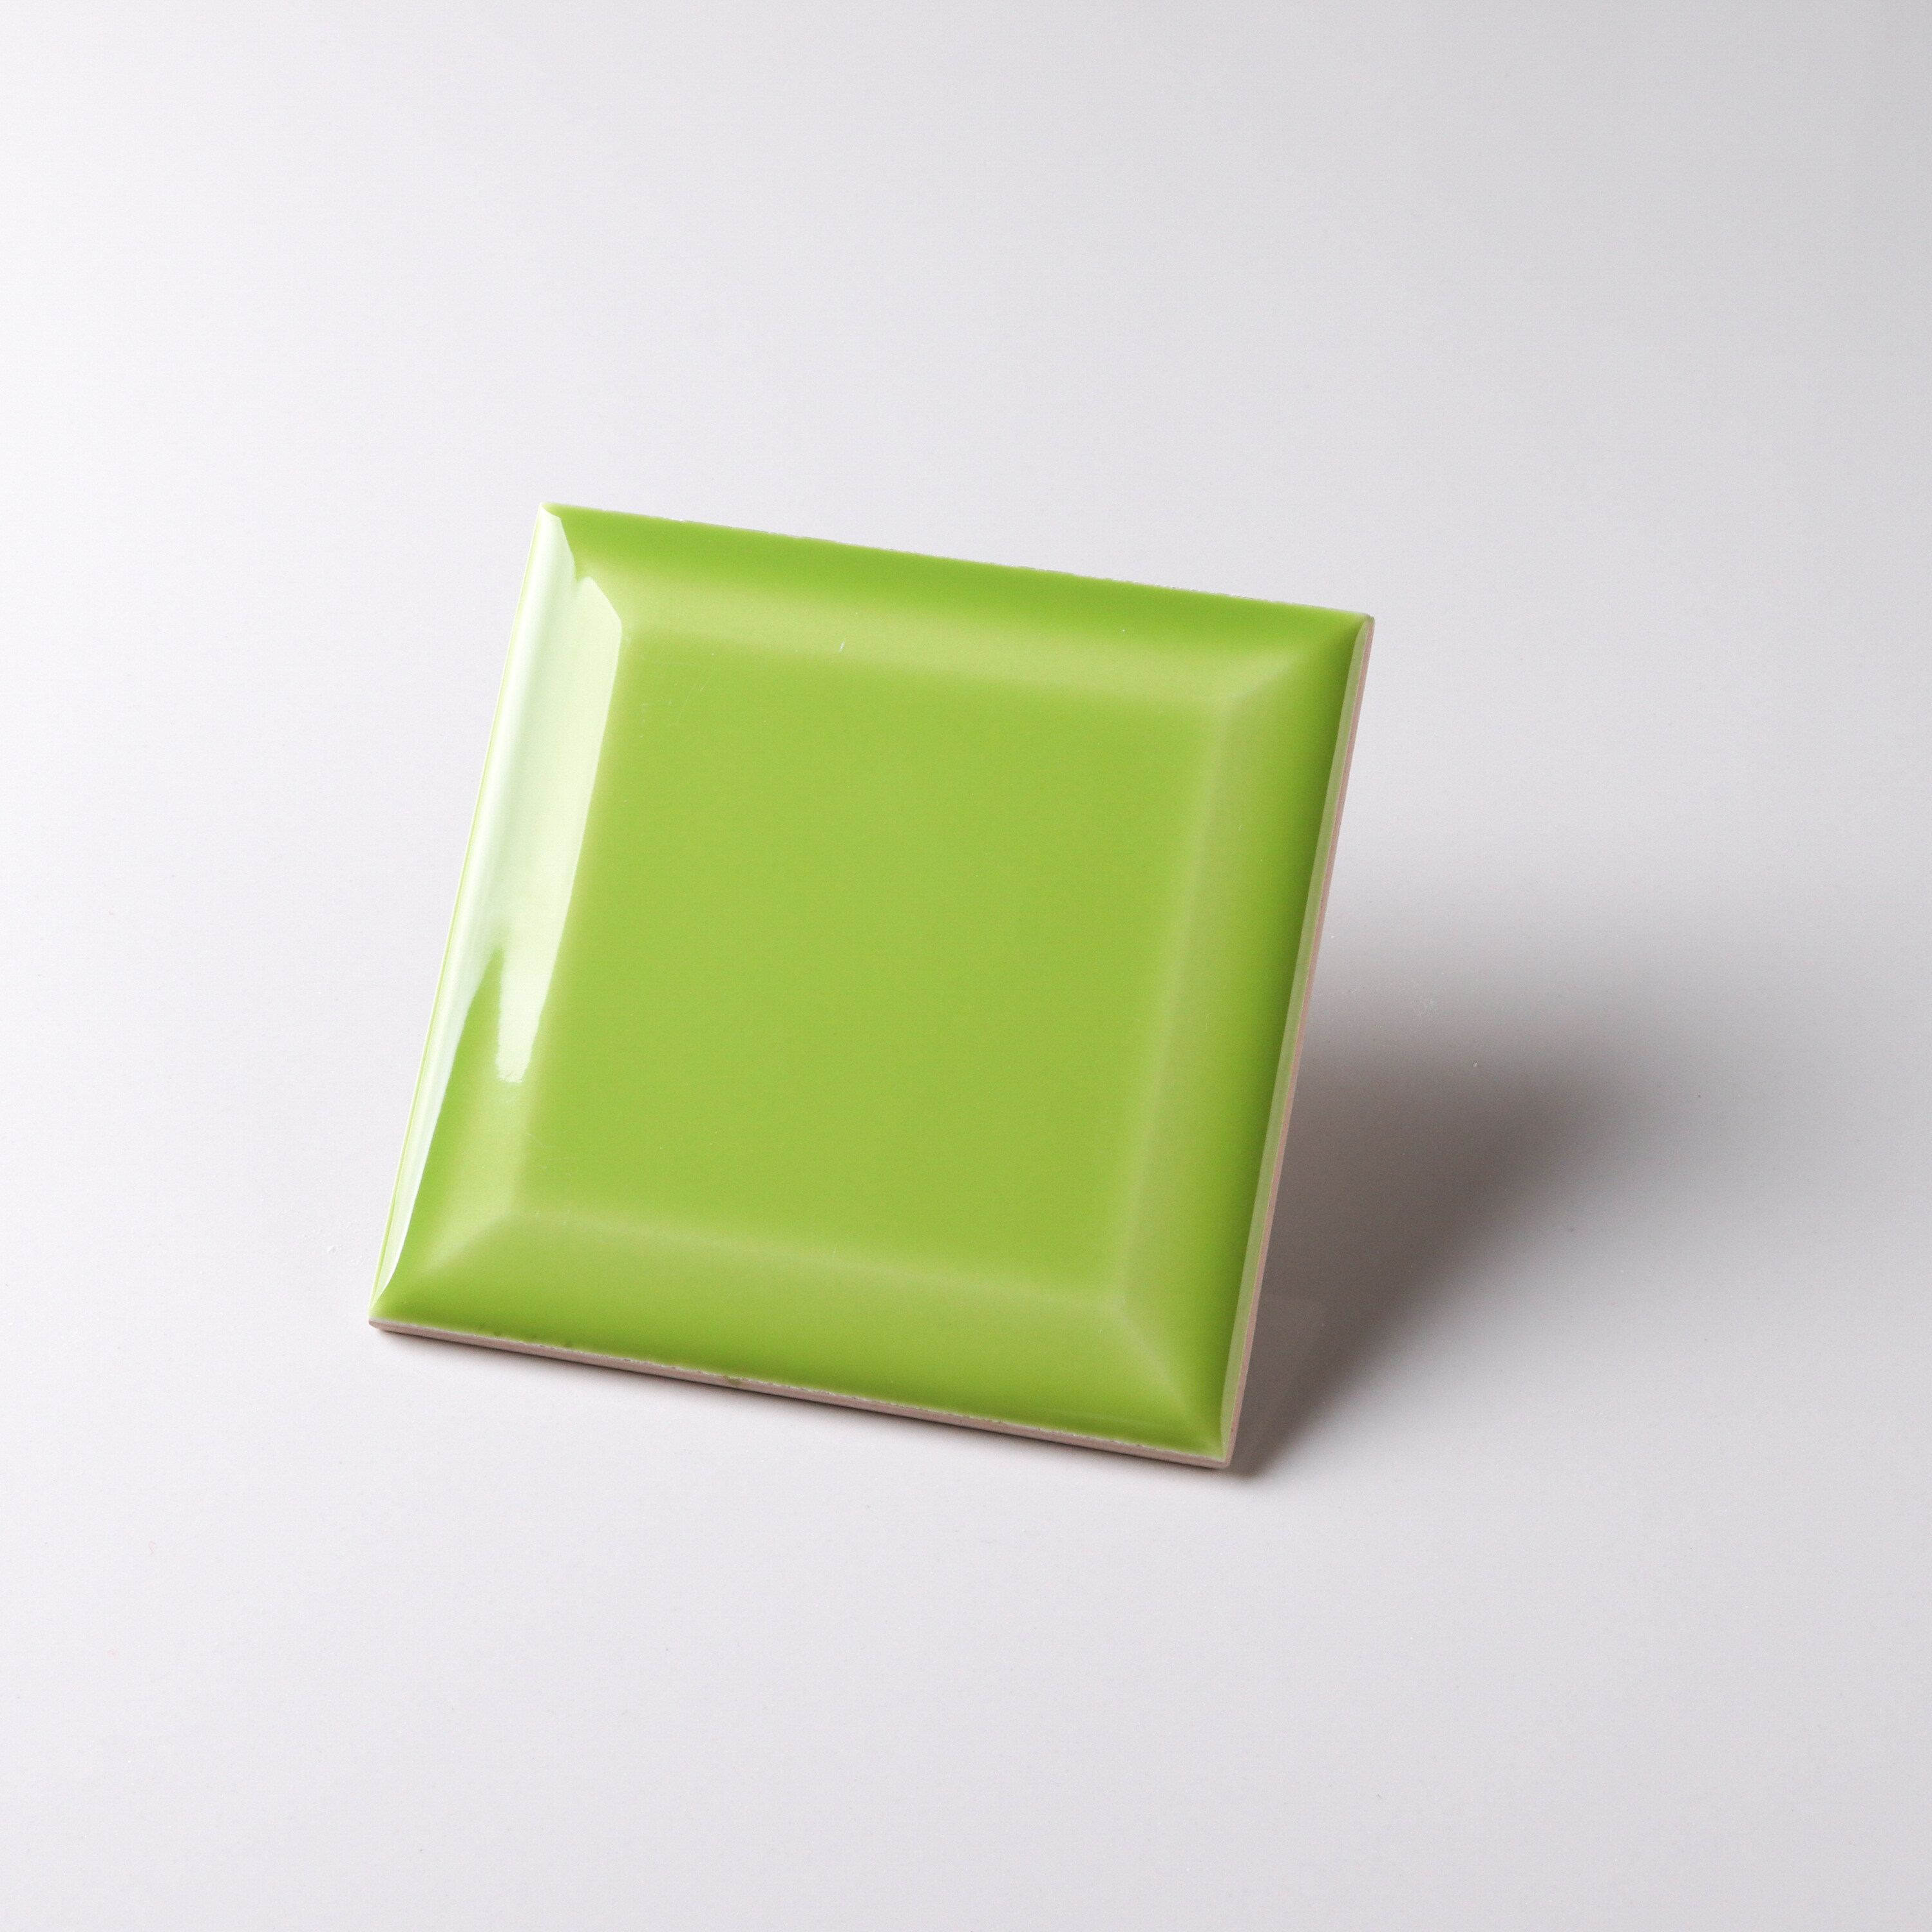 10x10 green square ceramic tile